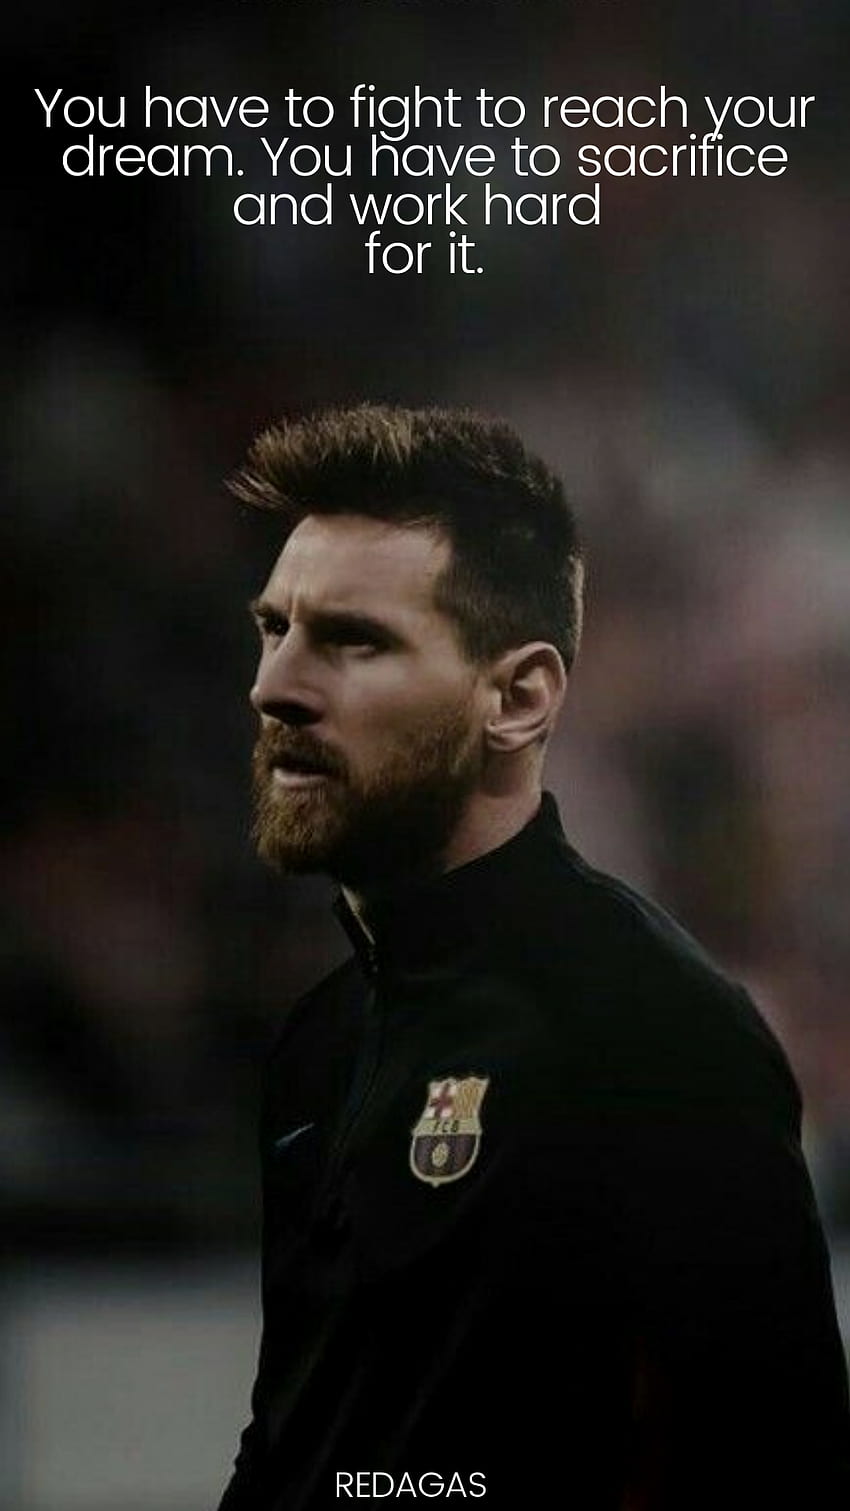 Hình nền động lực từ Lionel Messi có thể mang lại sự cổ vũ và động lực cho bất kỳ ai muốn đạt thành tích cao trong cuộc sống. Hãy xem hình ảnh liên quan để tìm kiếm nguồn cảm hứng và hy vọng từ ngôi sao bóng đá danh tiếng.